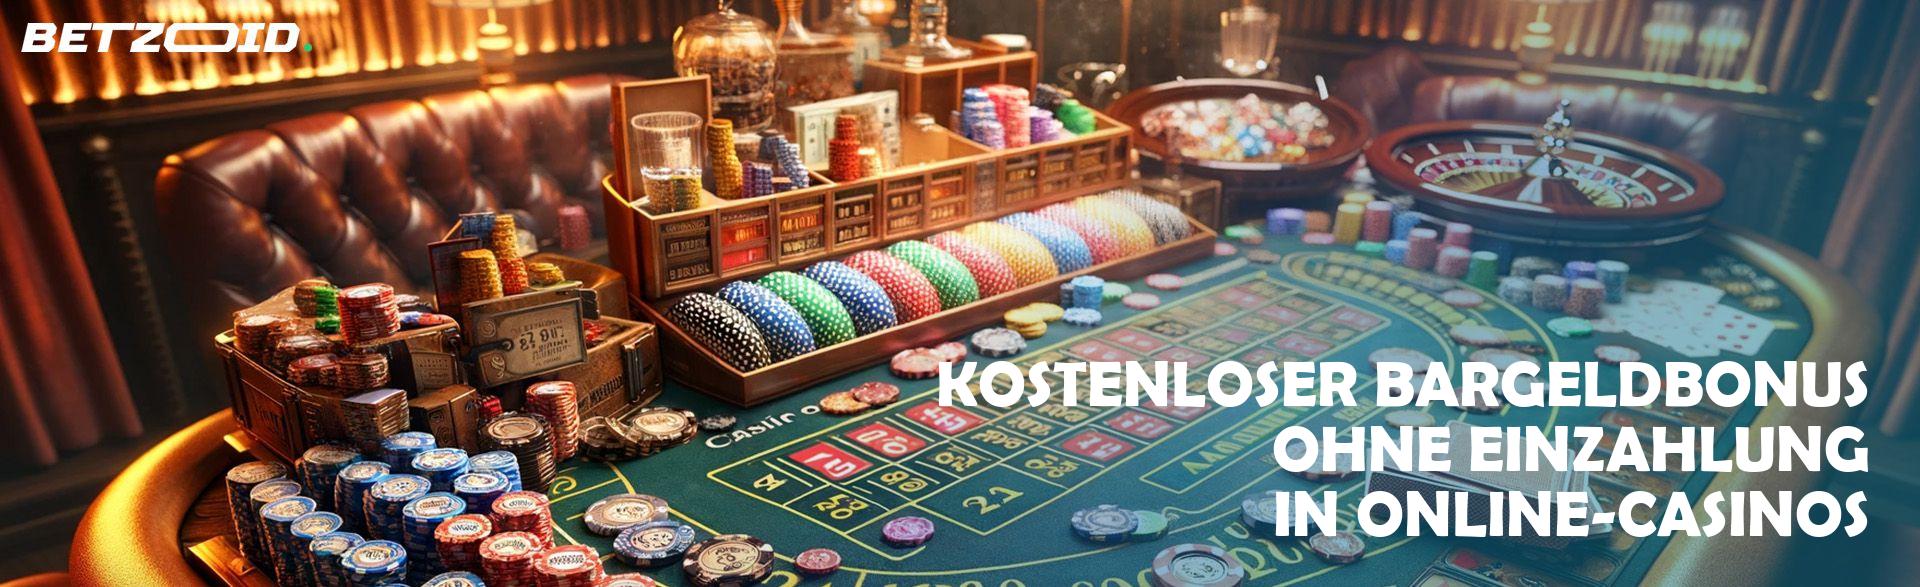 Kostenloser Bargeldbonus ohne Einzahlung in Online-Casinos.